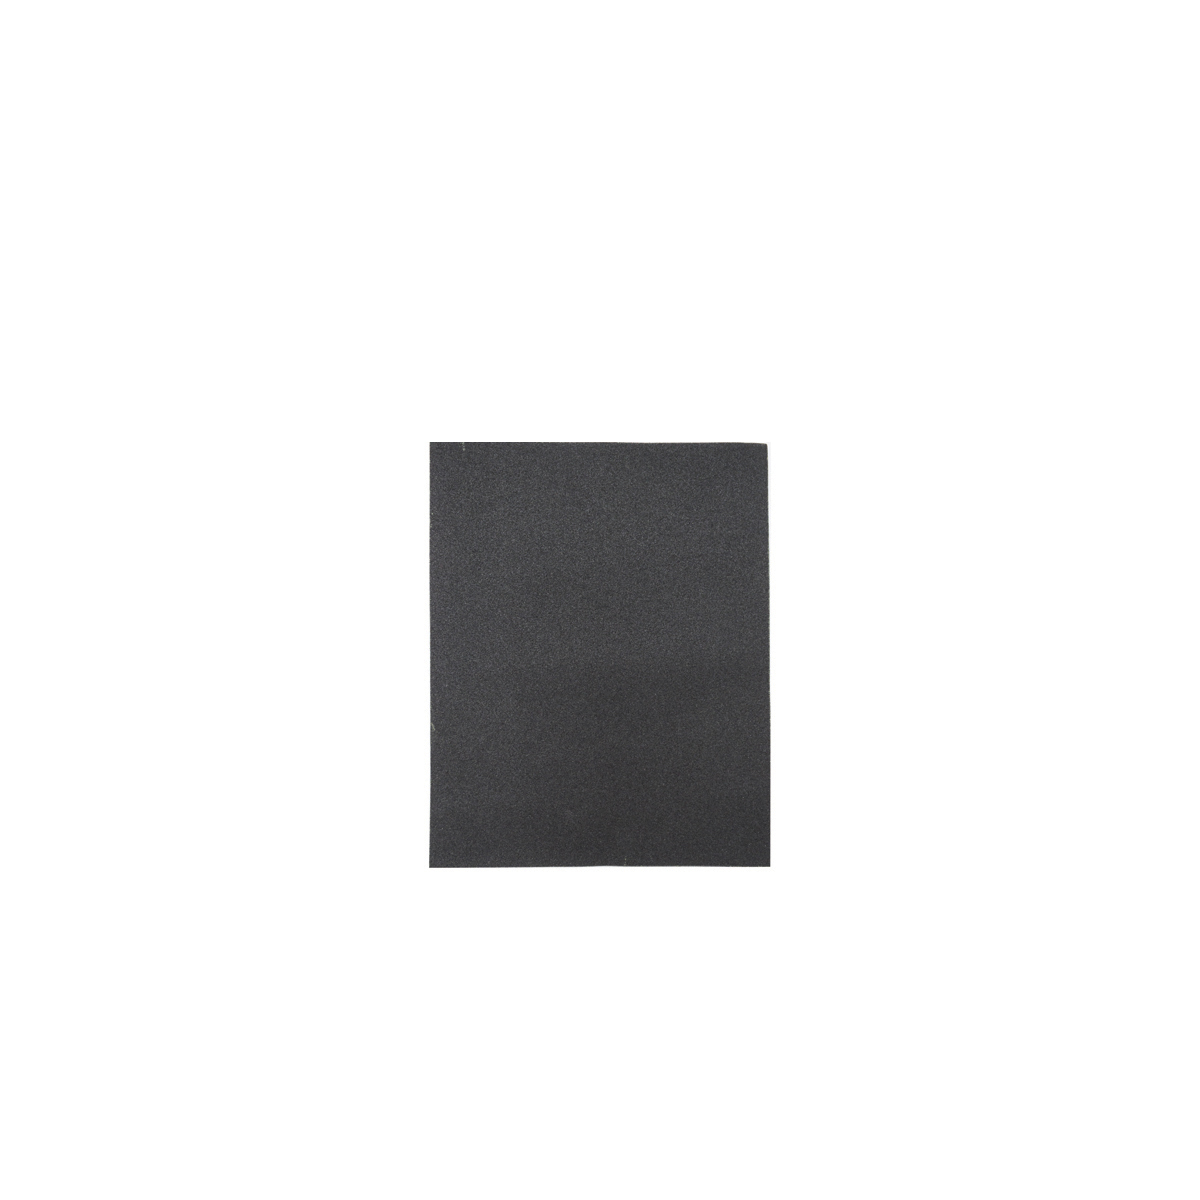 Лист шлифовальный Кедр, P 400, 230 x 280 мм, водостойкий,   бумага, 10 шт